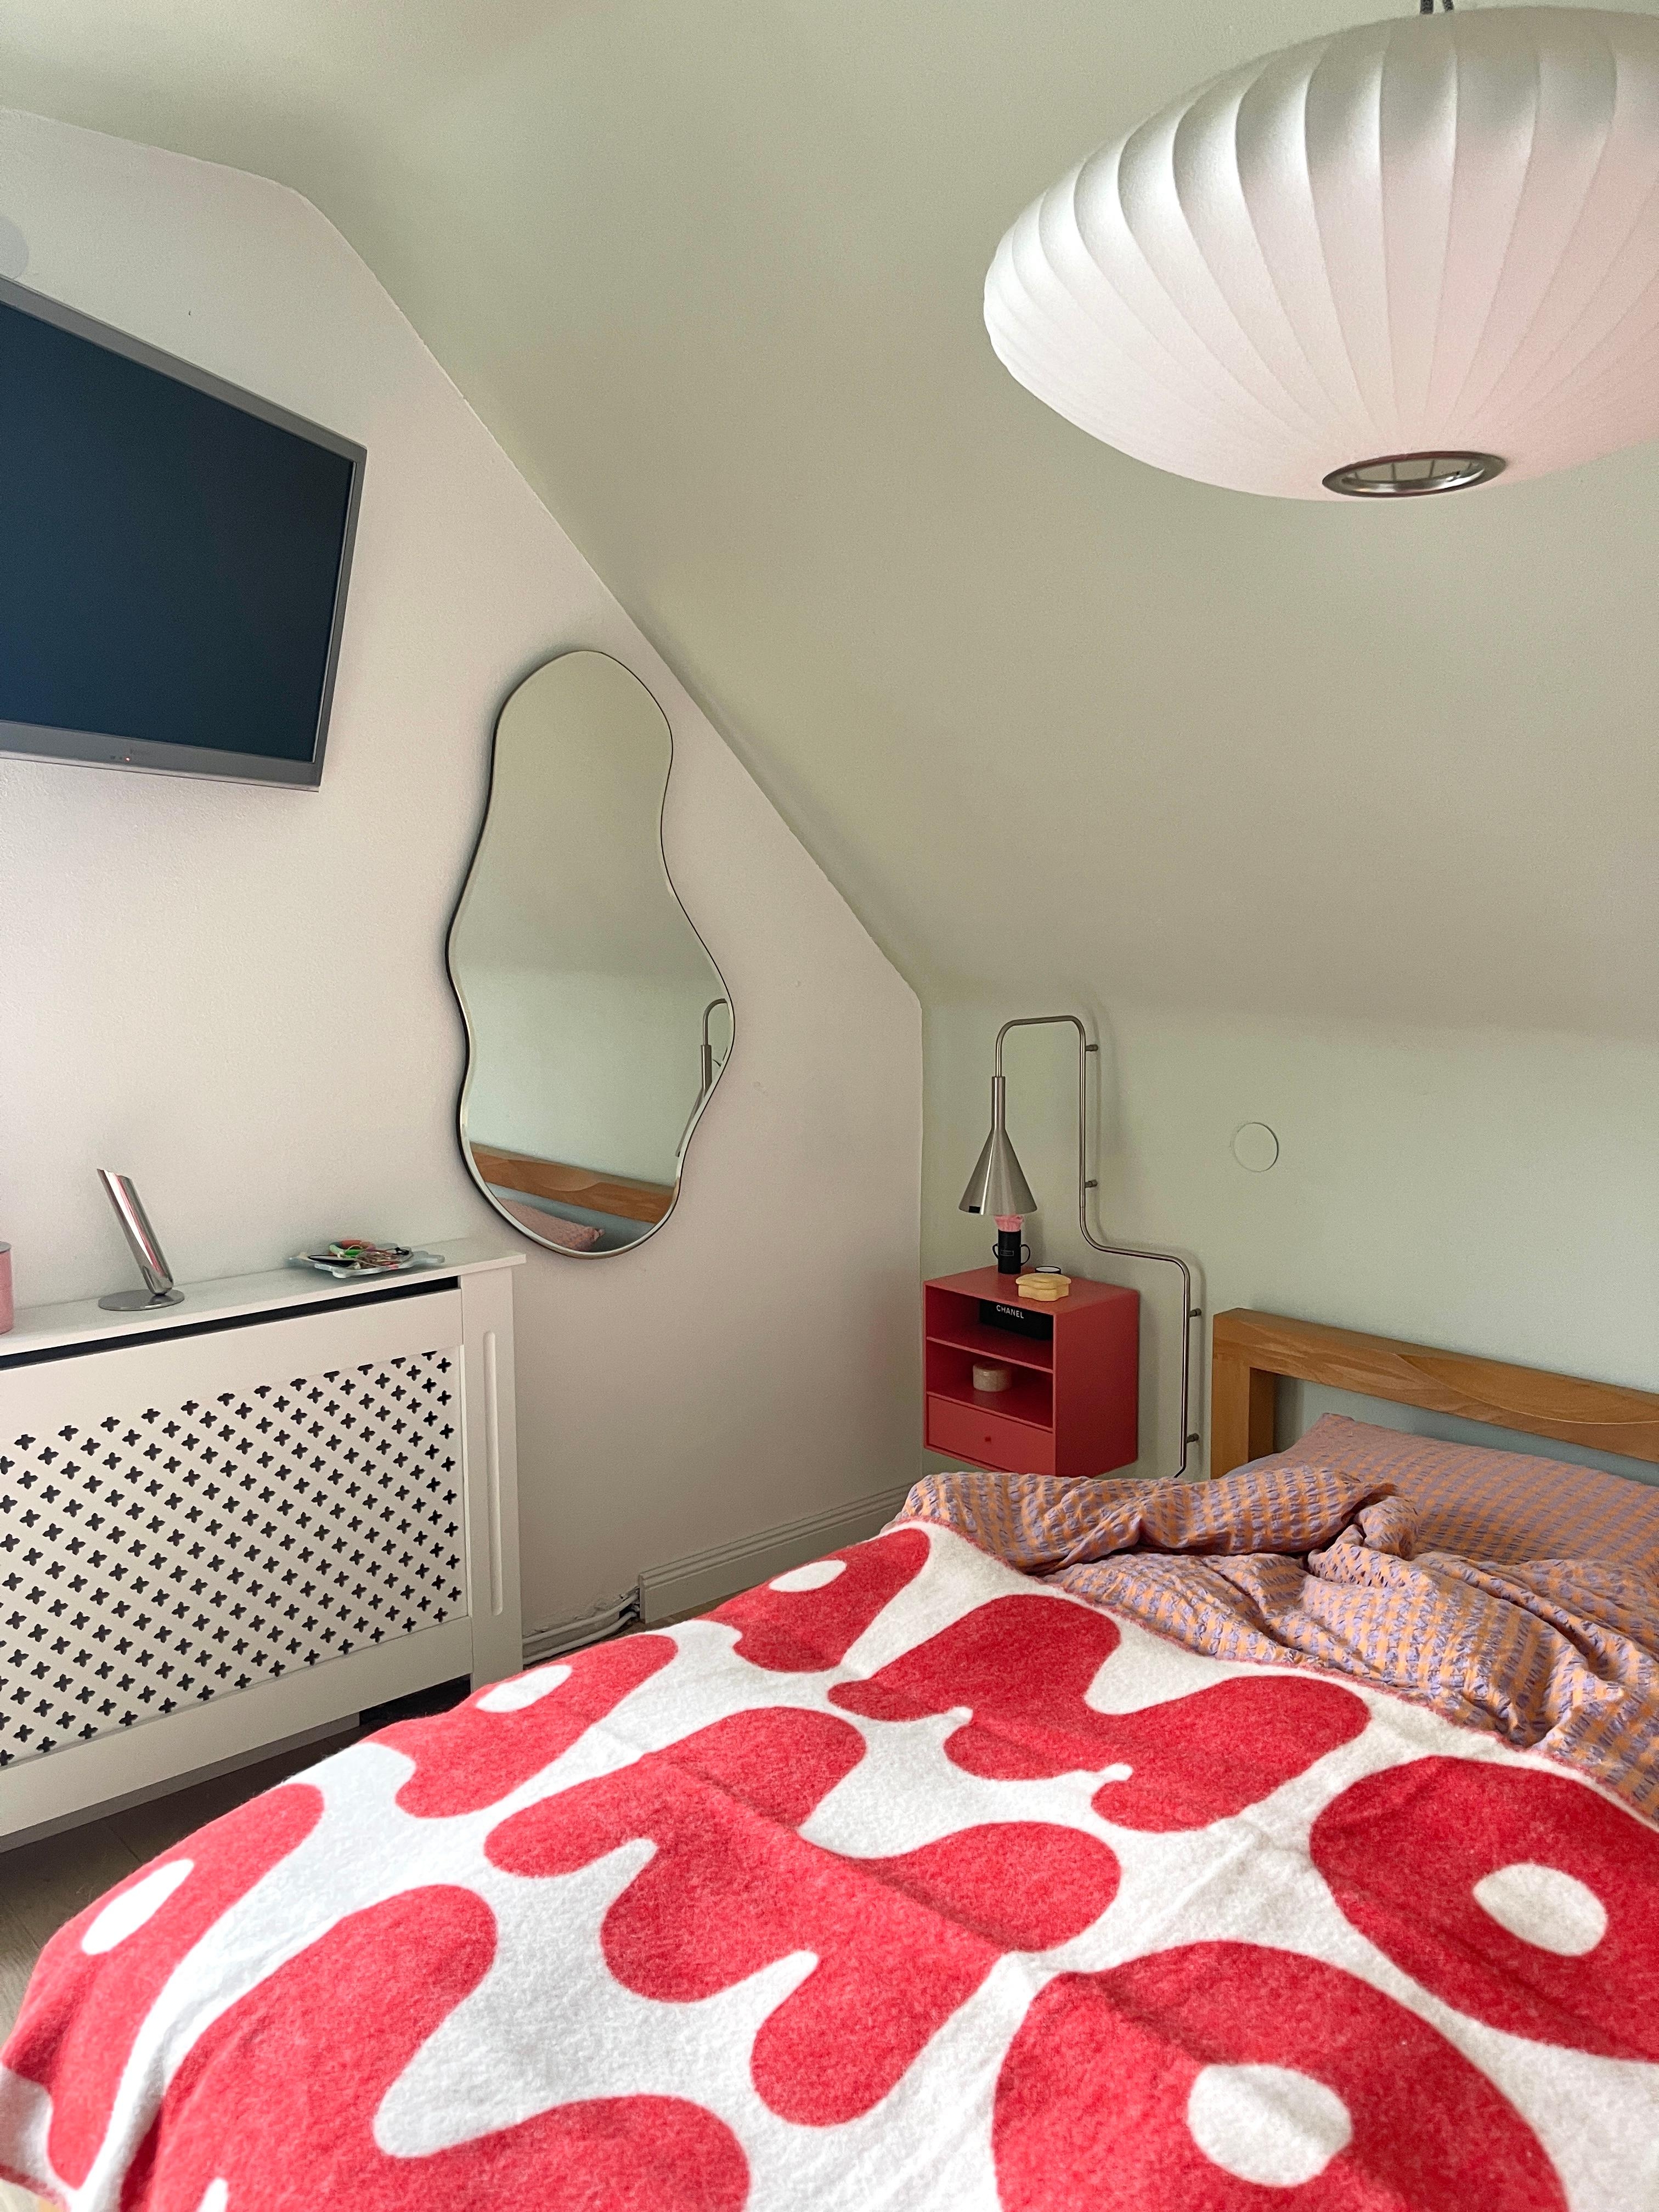 #living #home #interior #interiør #altbauliebe #wohnen #skandinavisch #couchstyle #schlafzimmer #wolldecke #lampe #skandi #spiegel #deko #intetior